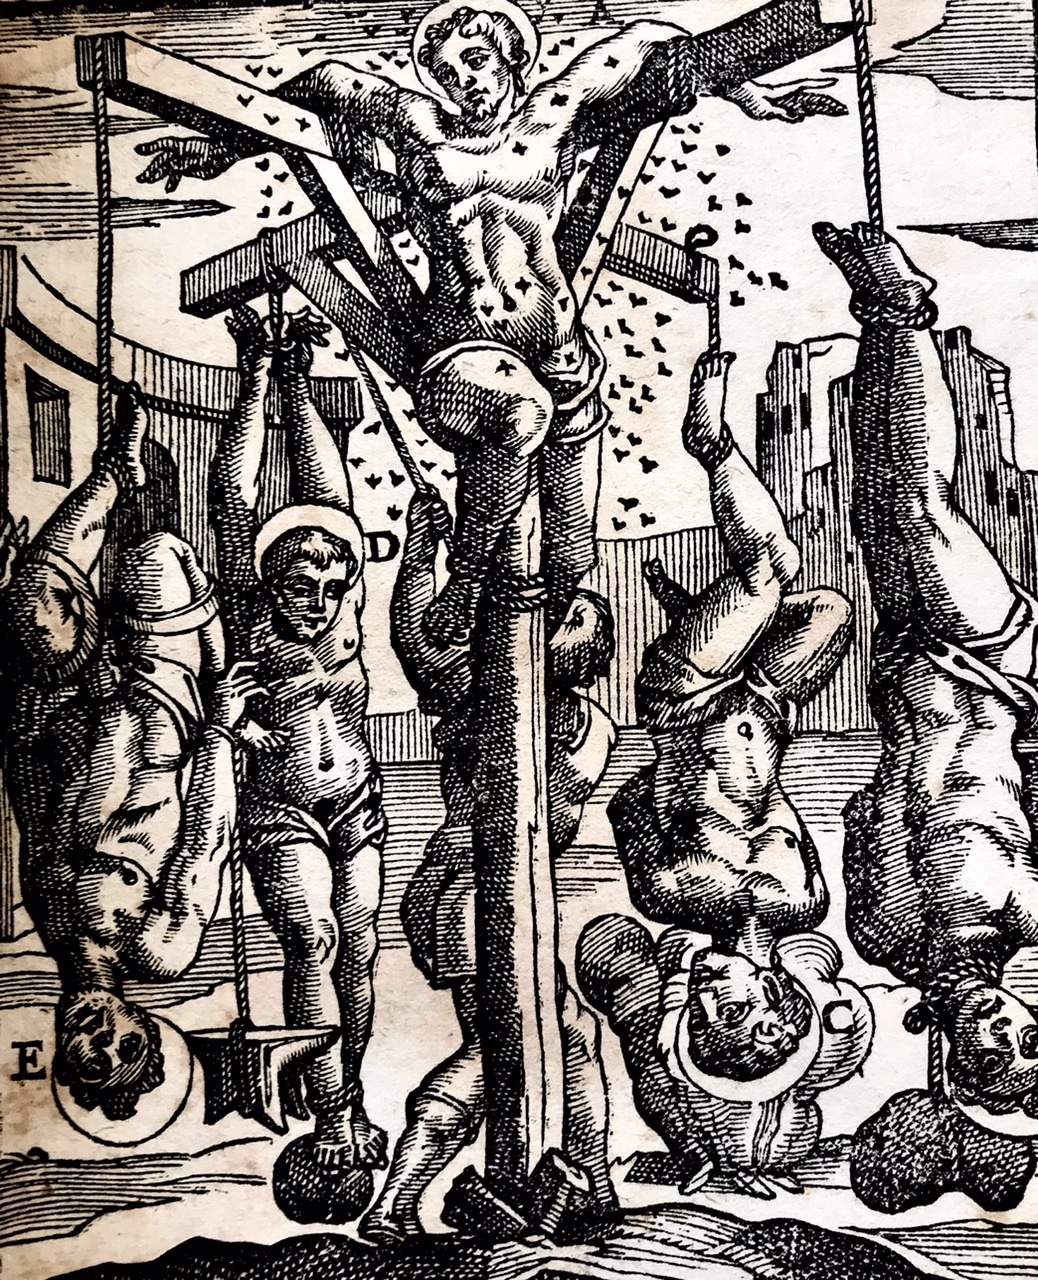 De SS. Martyrum Cruciatibus, Torture of Christian Martyrs by Antonio Gallonio